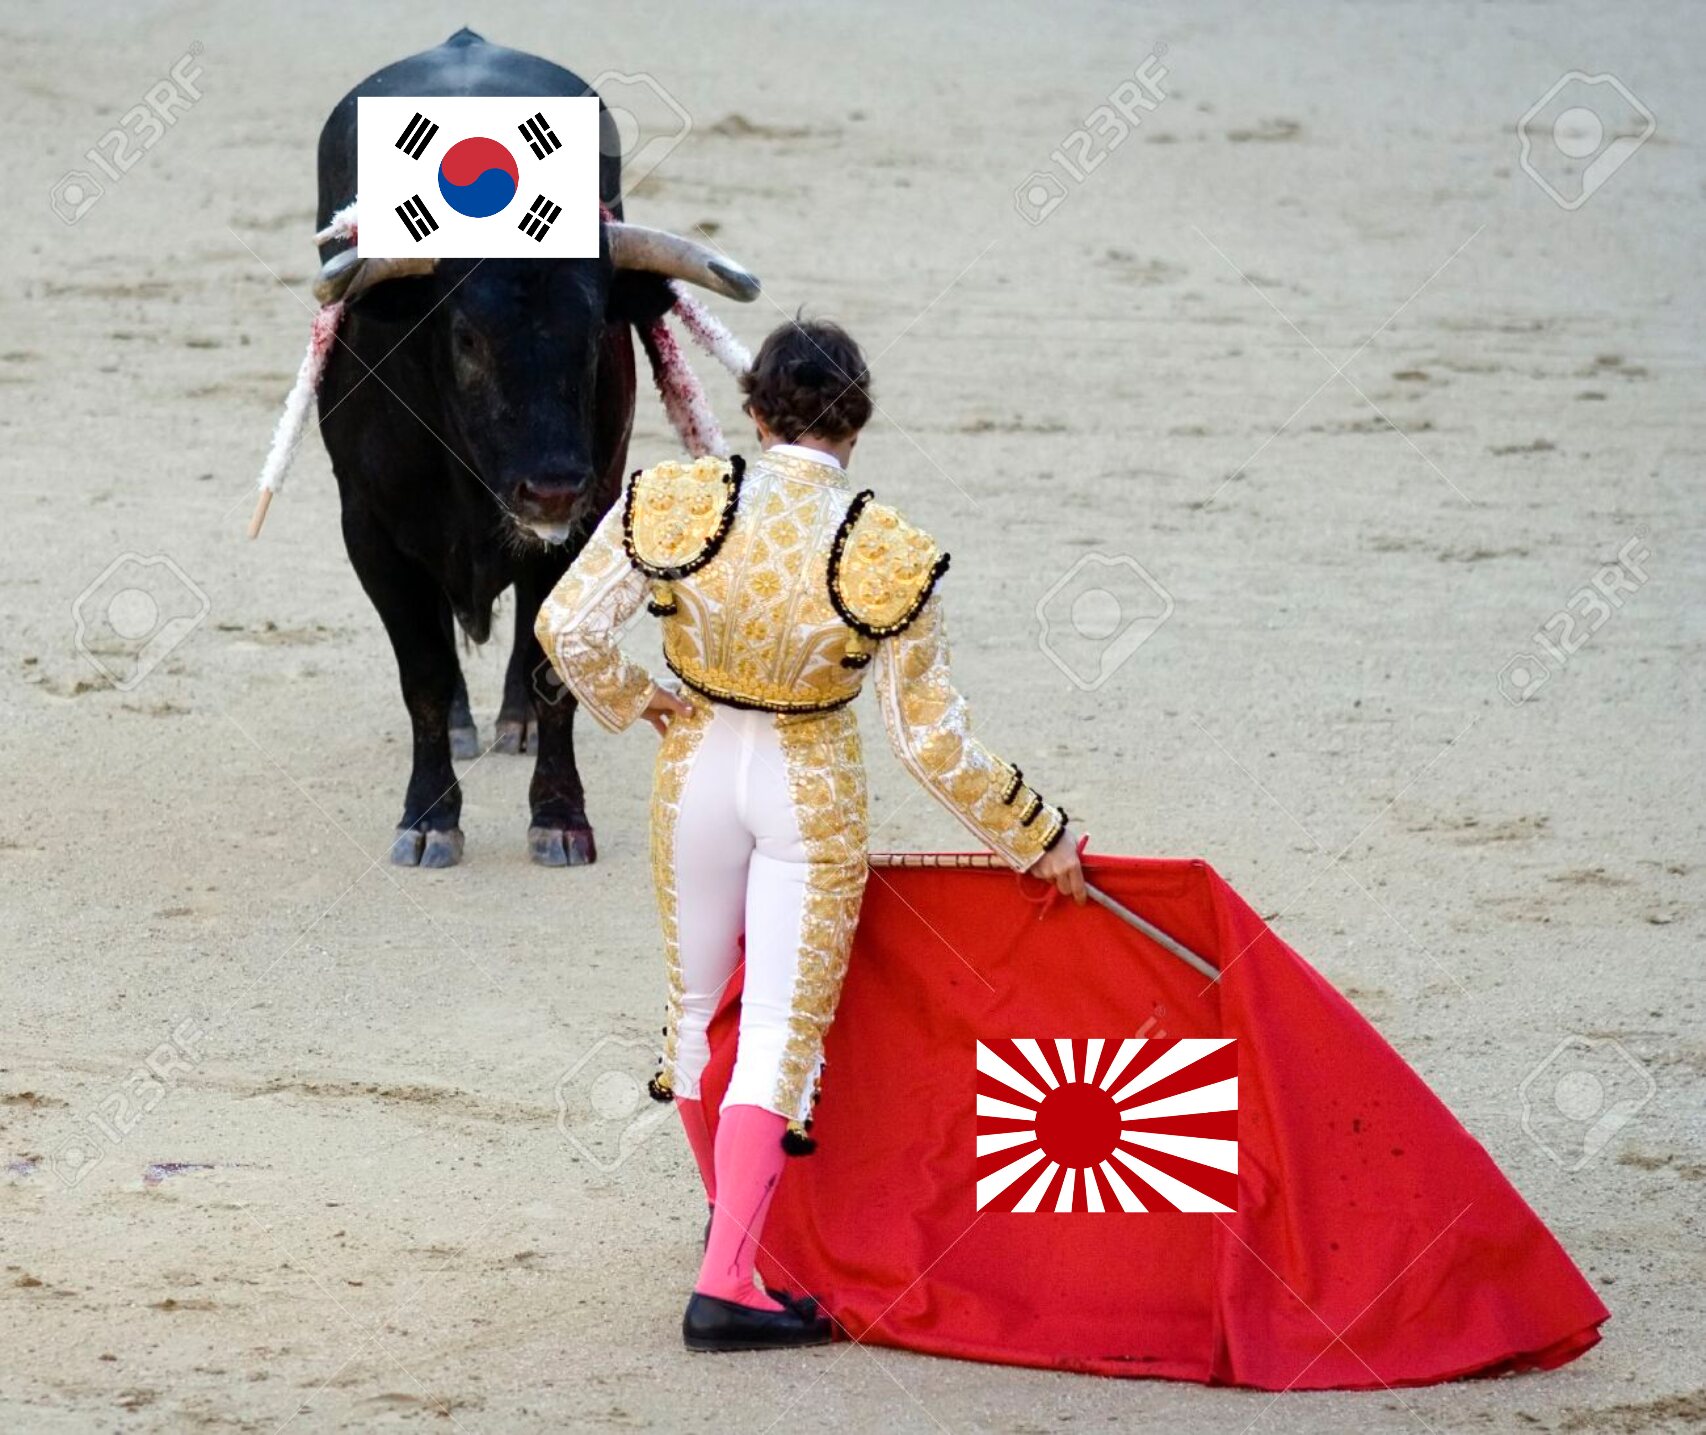 朝鮮人と旭日旗を分かりやすく画像にしてみた カイカイch 日韓交流掲示板サイト